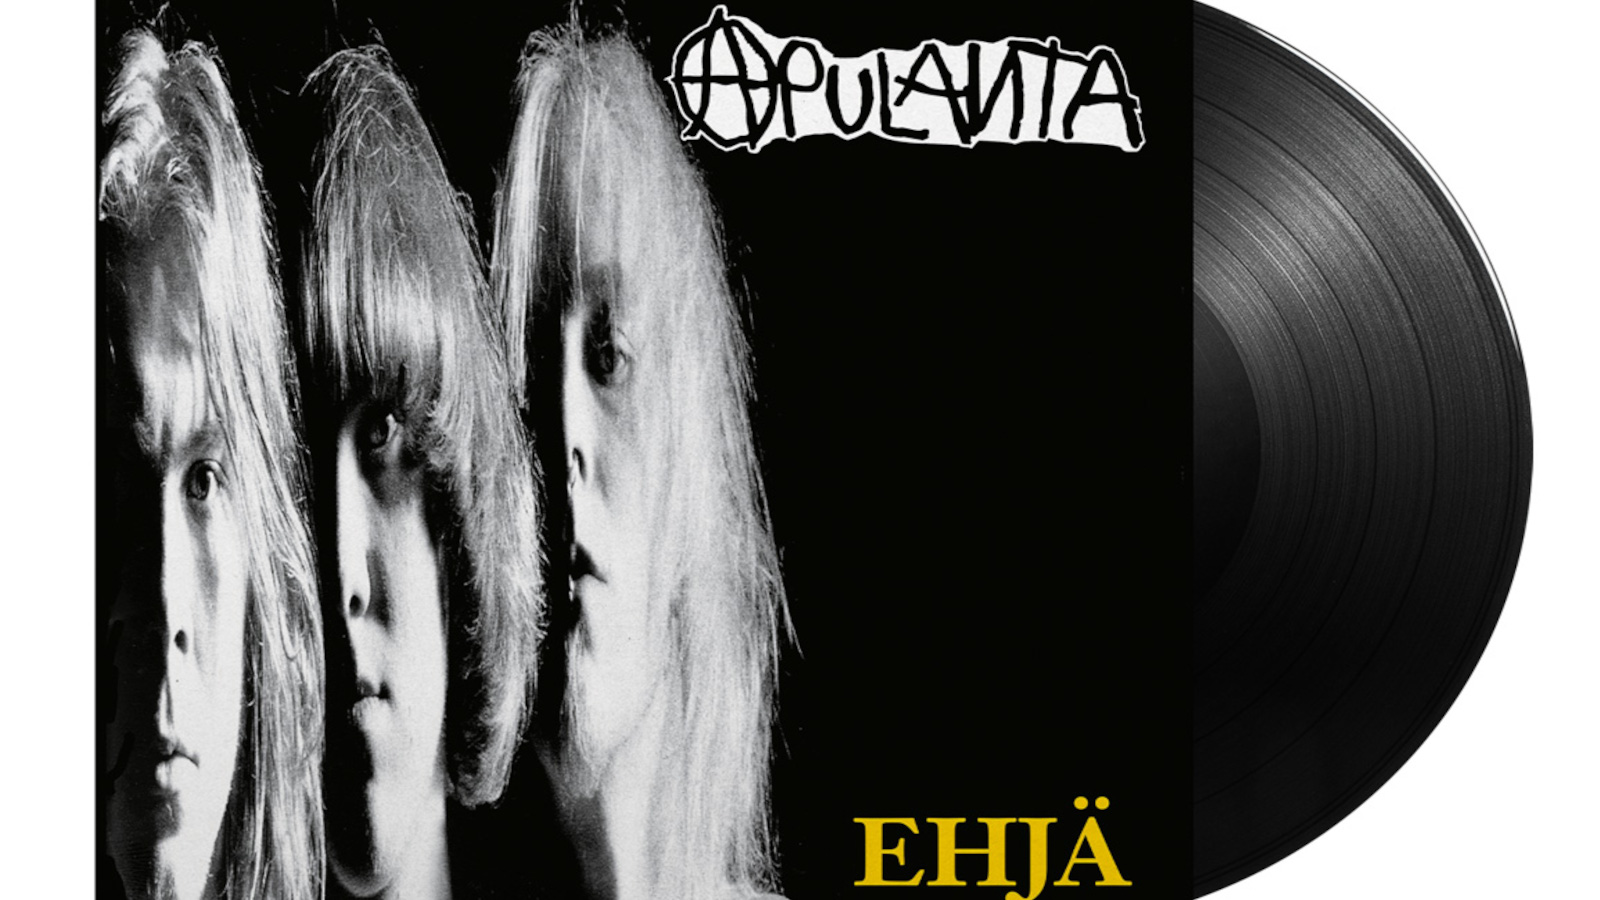 Backstage Rock Shopin vinyylinä julkaisema Apulannan levy Ehjä.